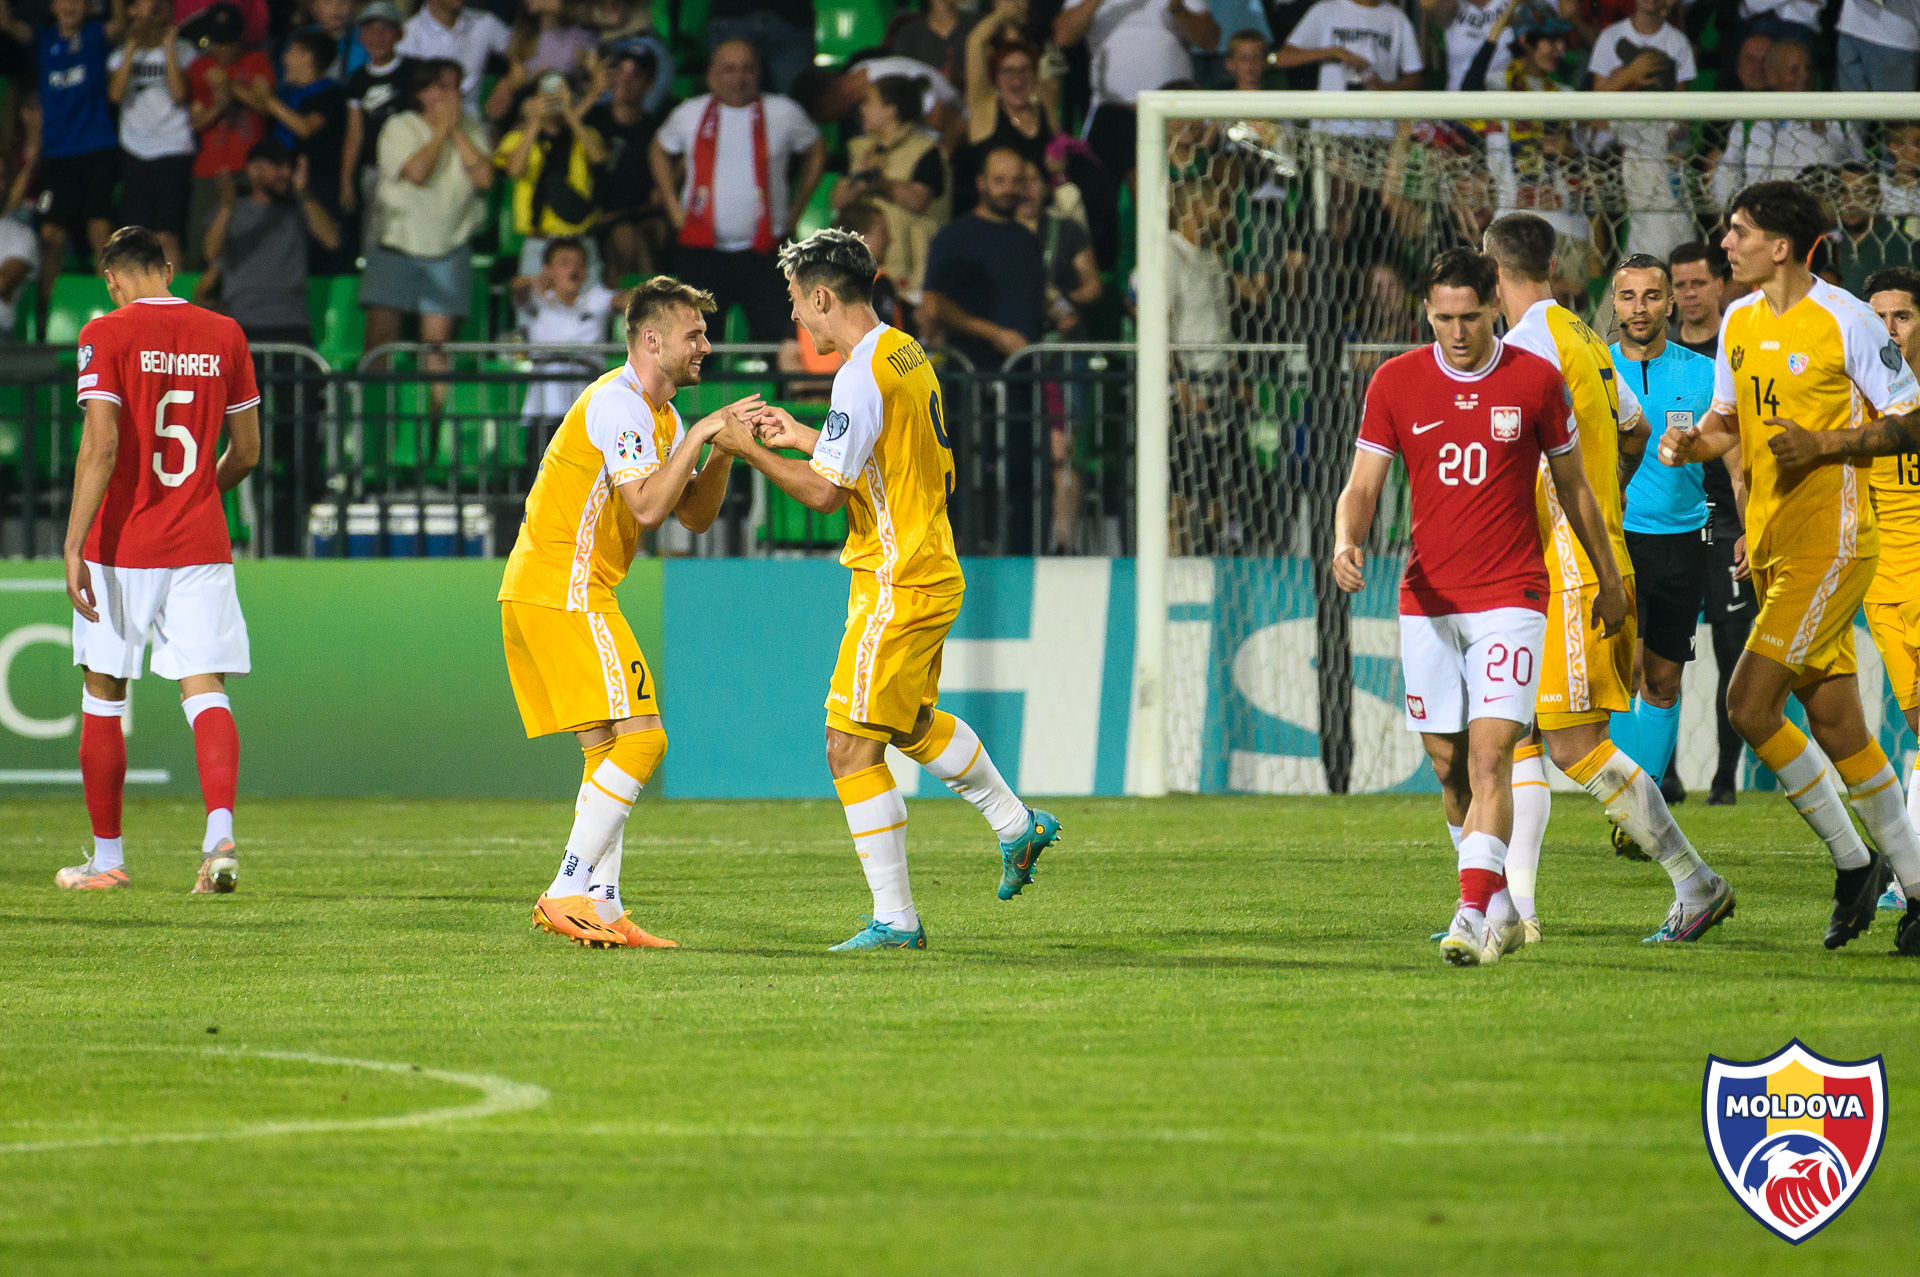 (FOTO) Victorie istorică. Naționala Moldovei la fotbal a învins Polonia cu scor 3-2